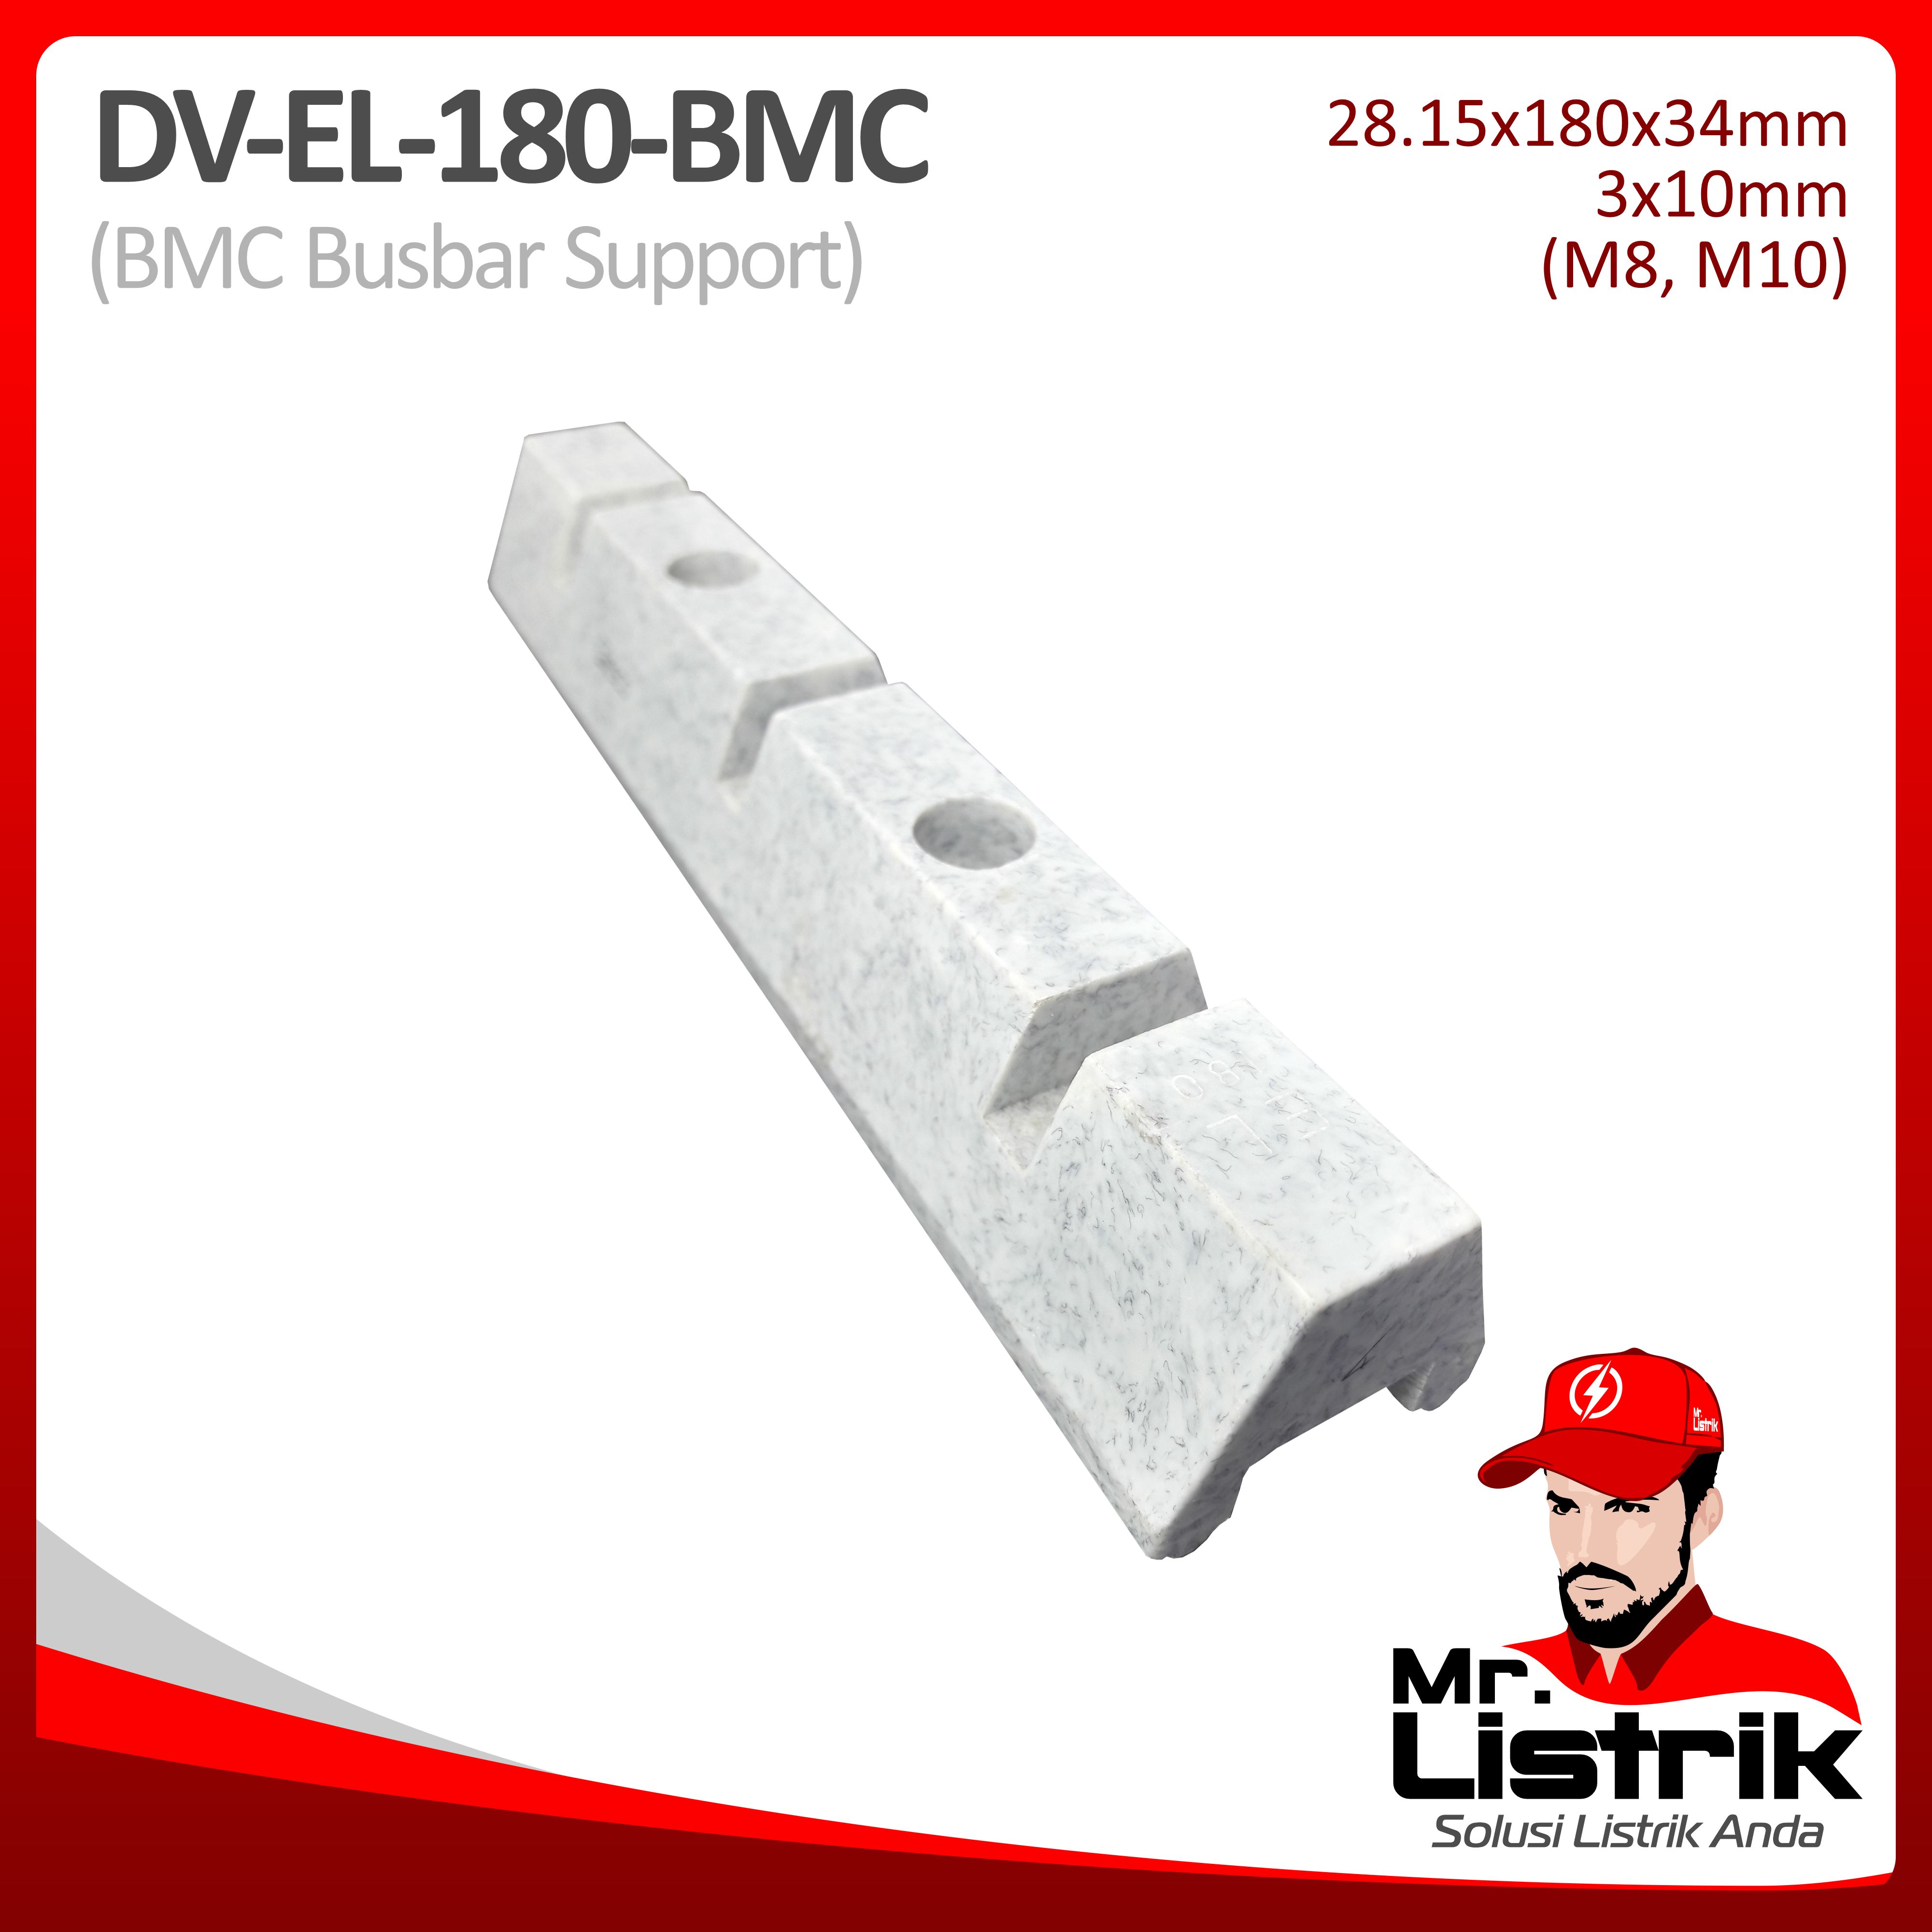 Busbar Support BMC DV EL-180-BMC